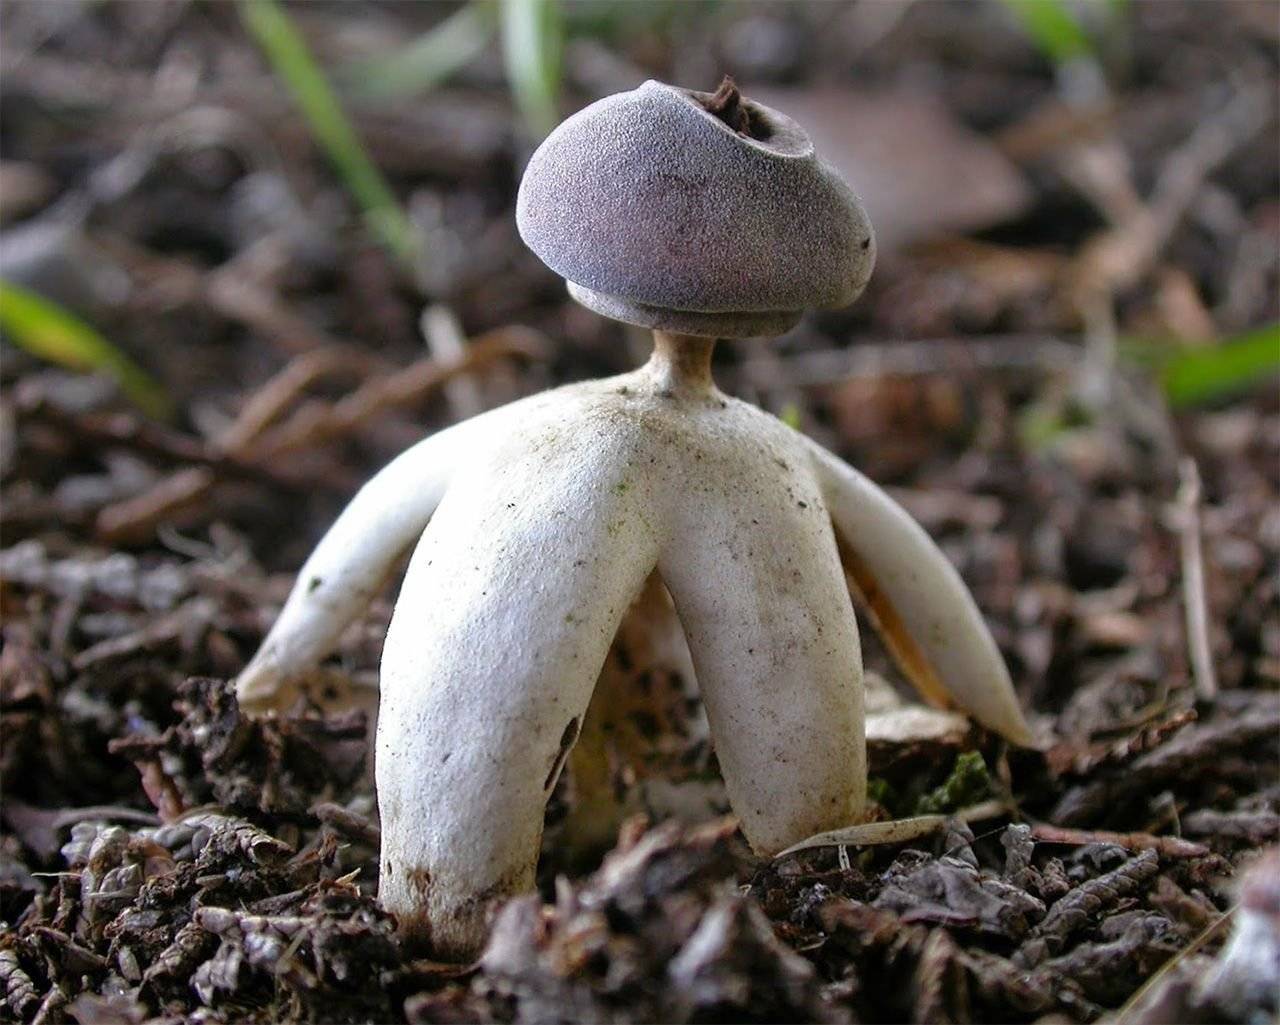 Звездовик бахромчатый – гриб, похожий на звезду — викигриб